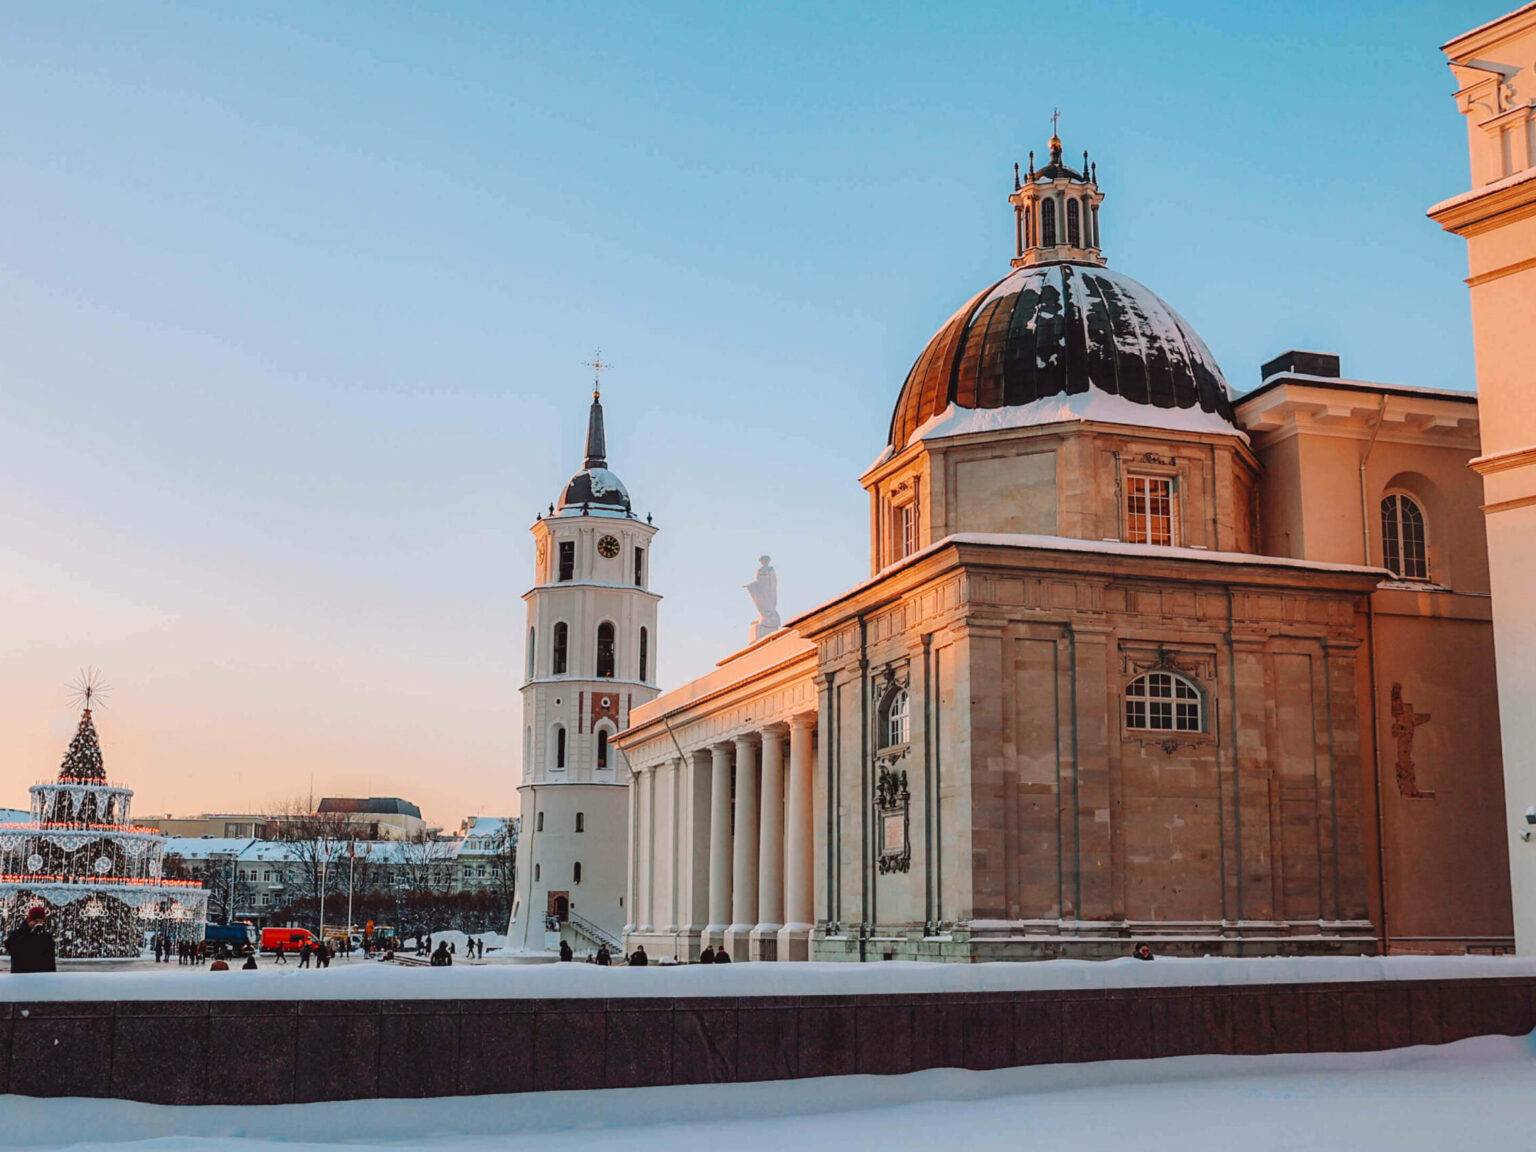 Vor der Kathedrale St. Stanislaus in Vilnius steht auf dem Platz ein beleuchteter Weihnachtsbaum.